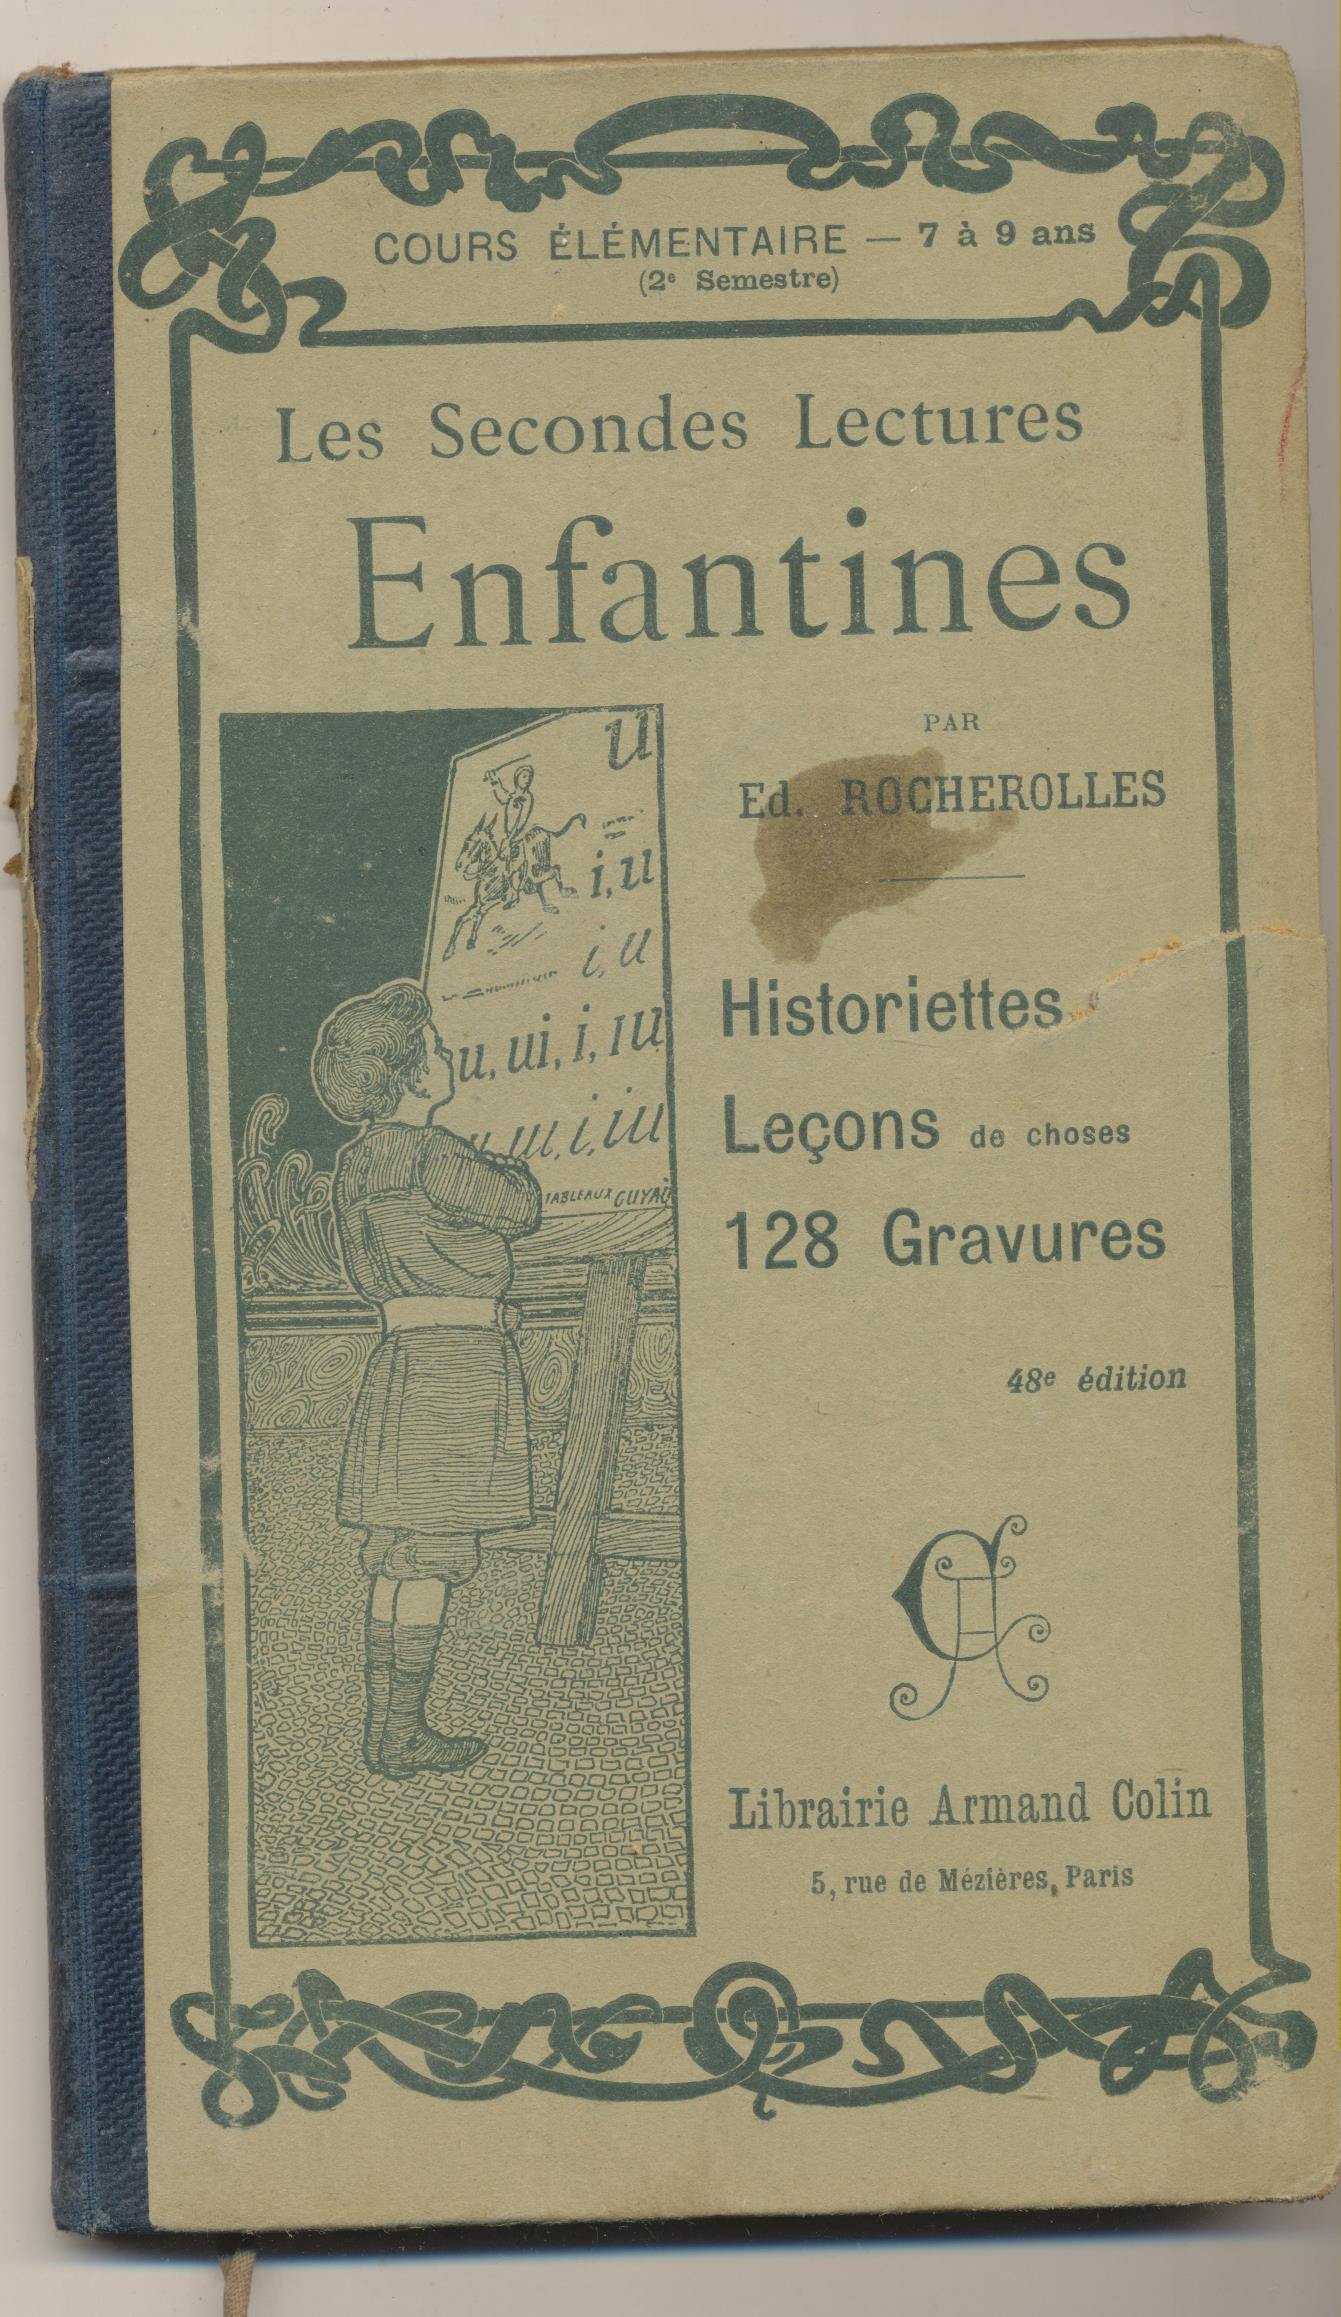 Les Secondes Lectures Enfantines. par Ed. Rochelles. Librairie Armand Colin, Paris 1902